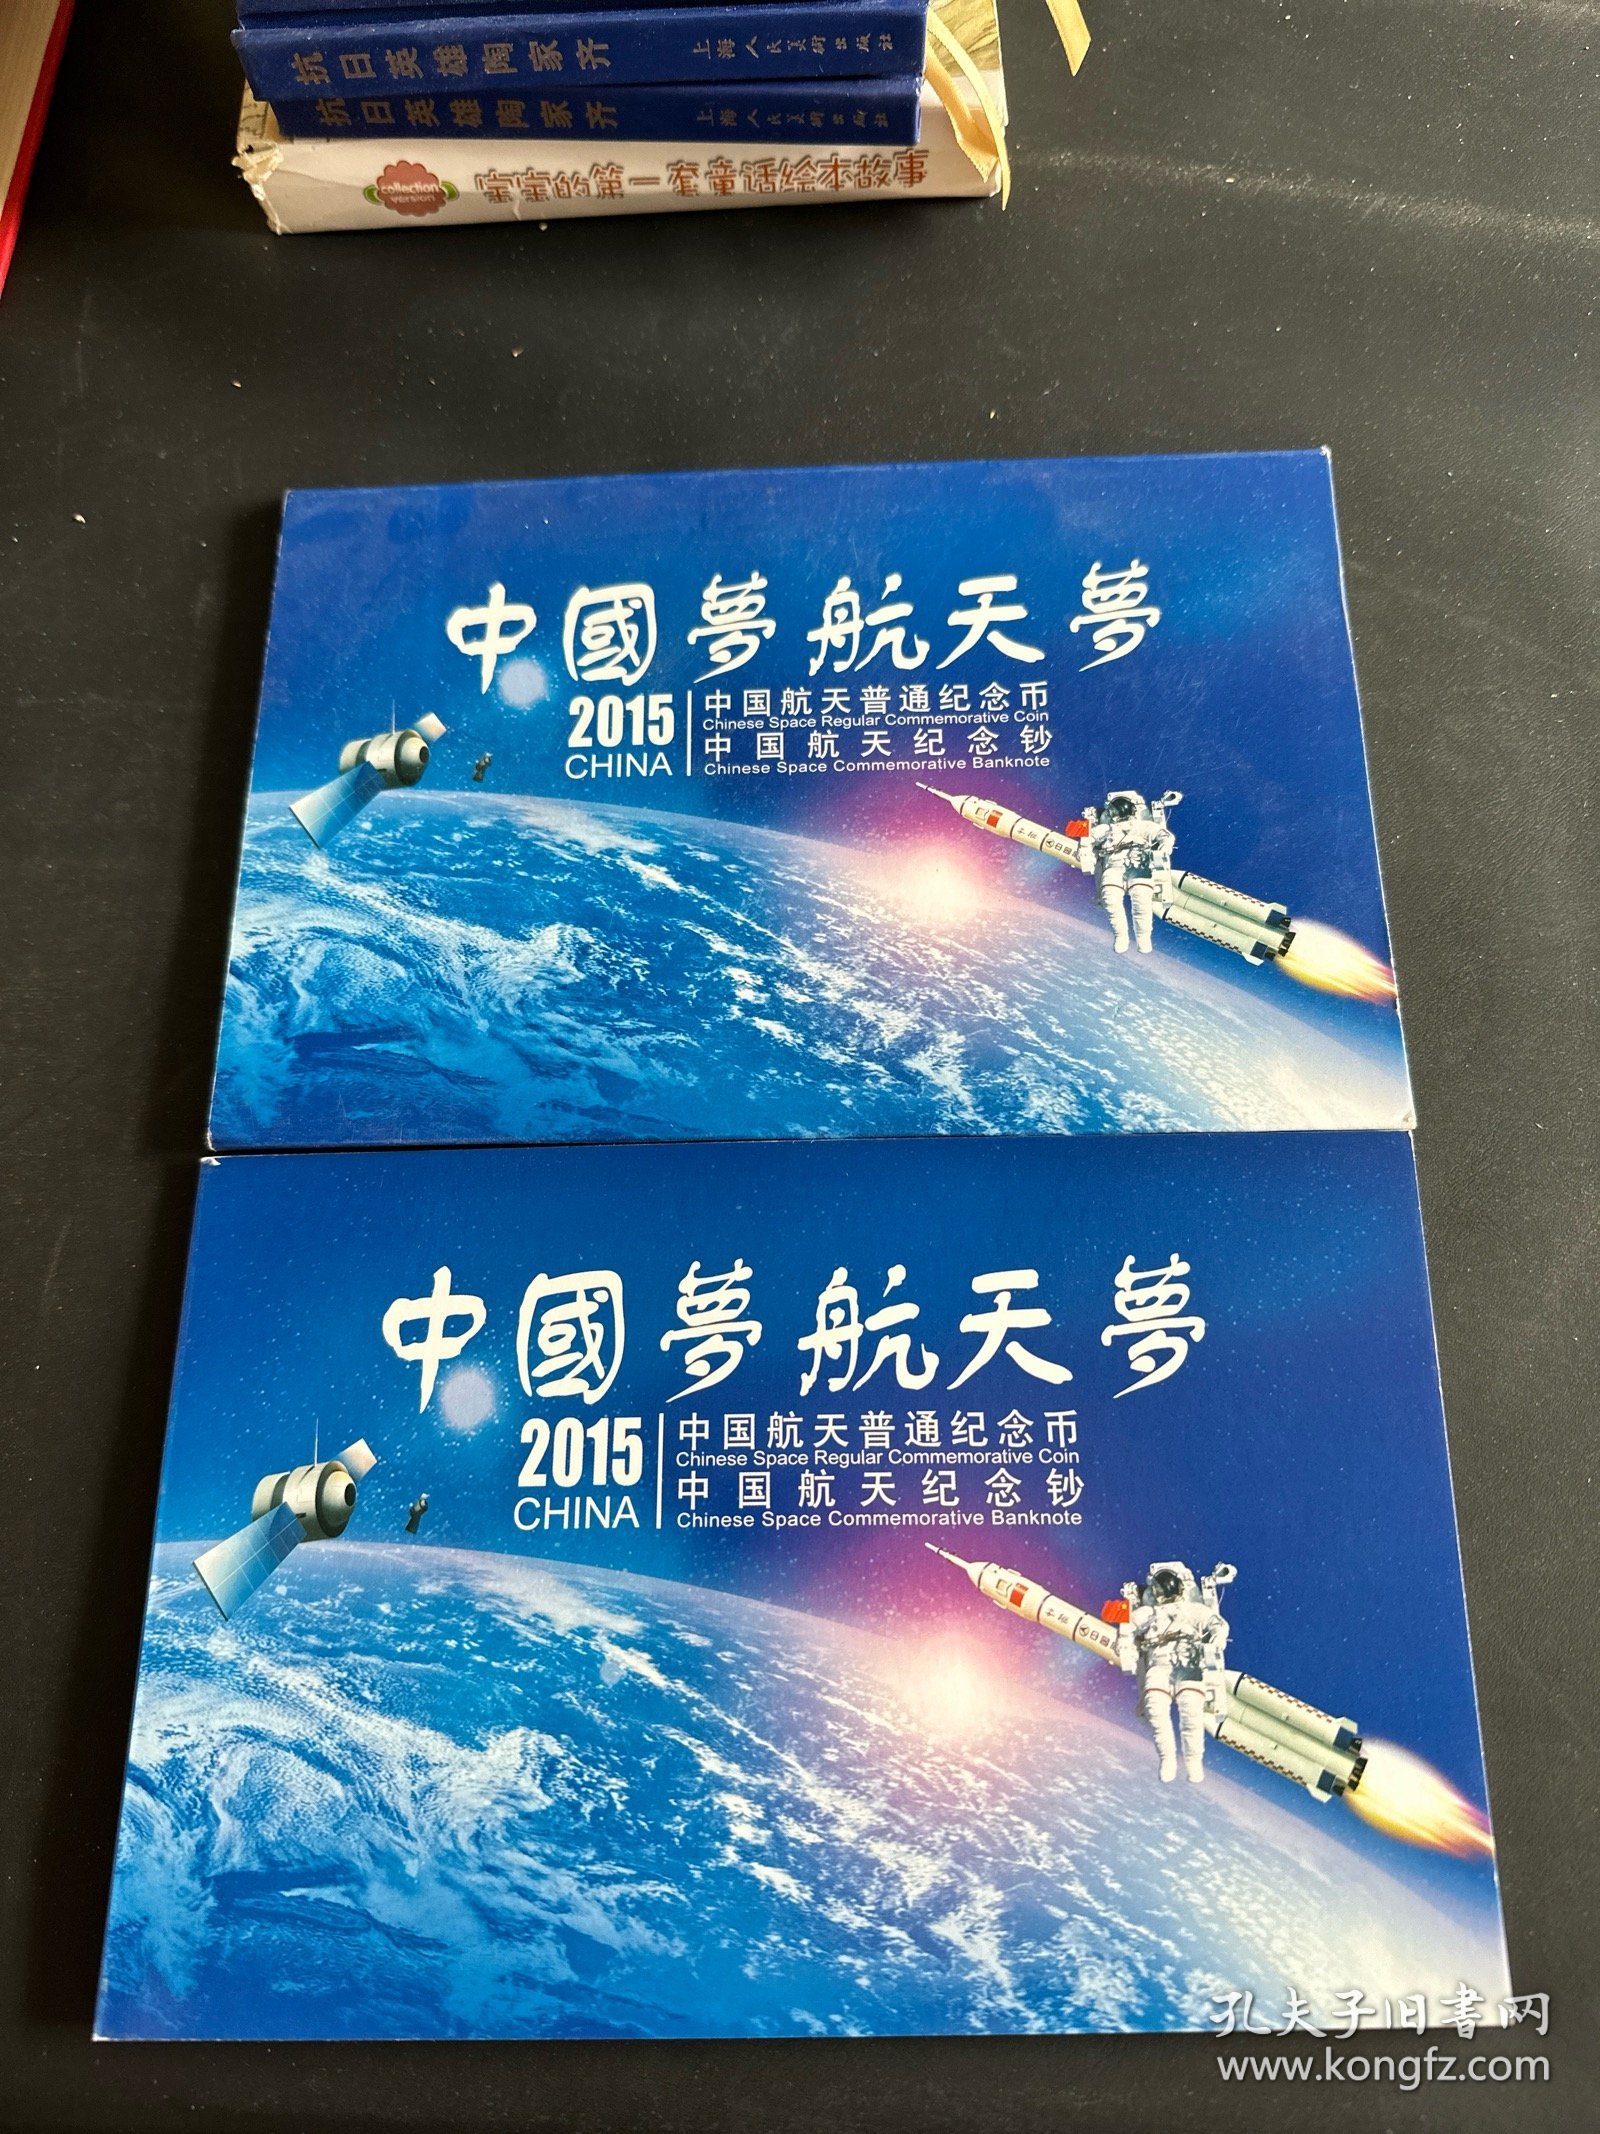 《中国梦航天梦2015中国航天普通纪念币纪念钞》套装